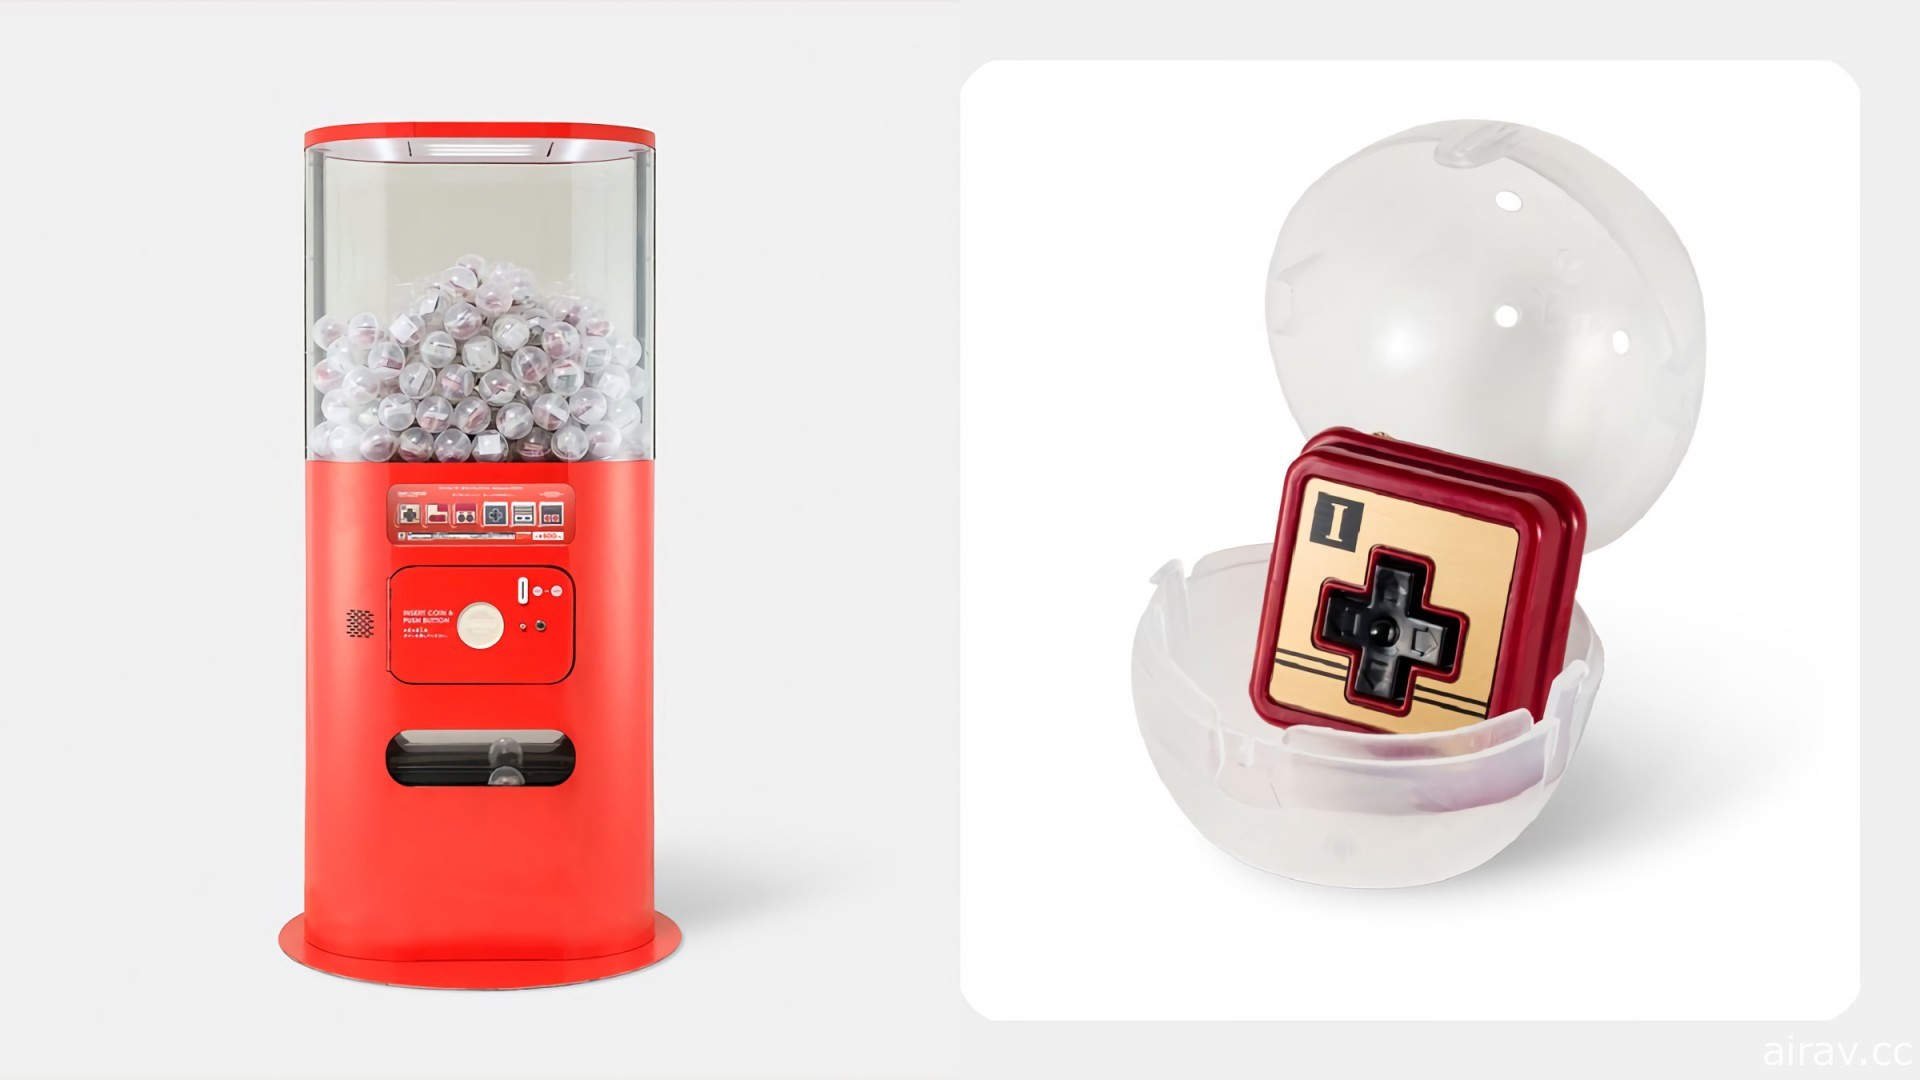 任天堂直營商店推出紅白機控制器按鈕轉蛋組 重現經典十字鍵與 A B 鈕造型